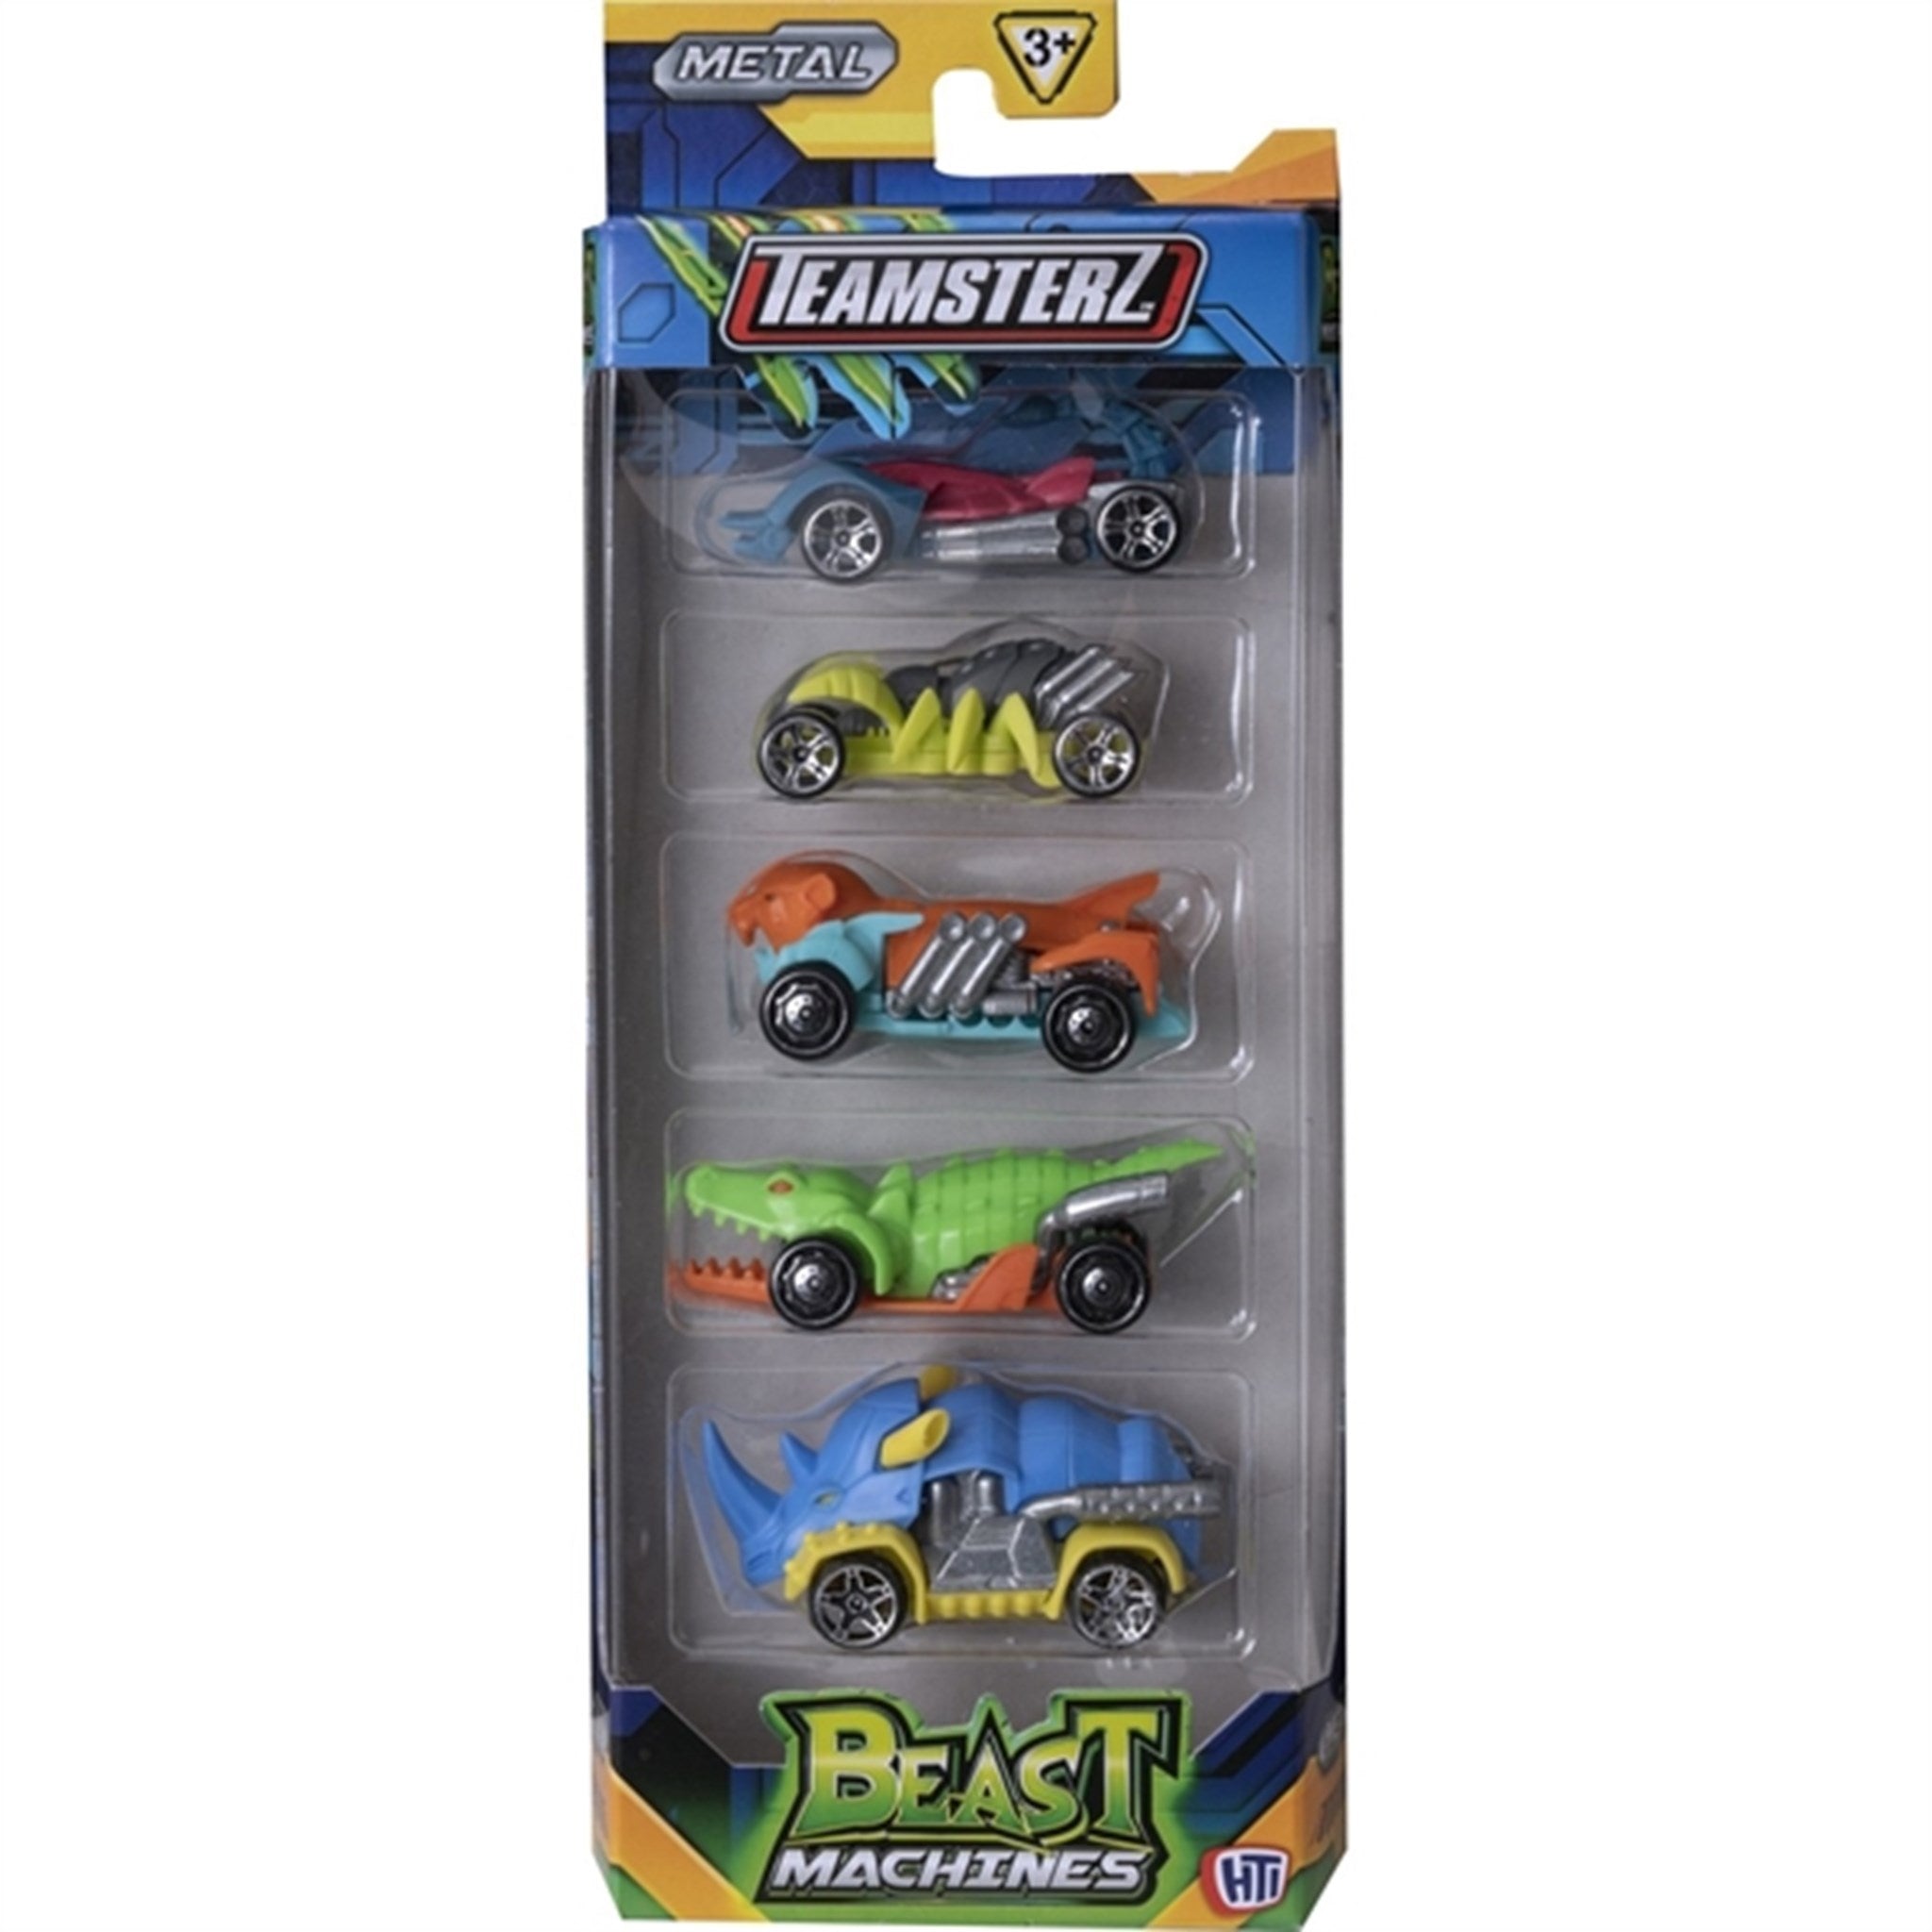 Teamsterz Beast Machine Die-Cast Cars 5-pack - 2